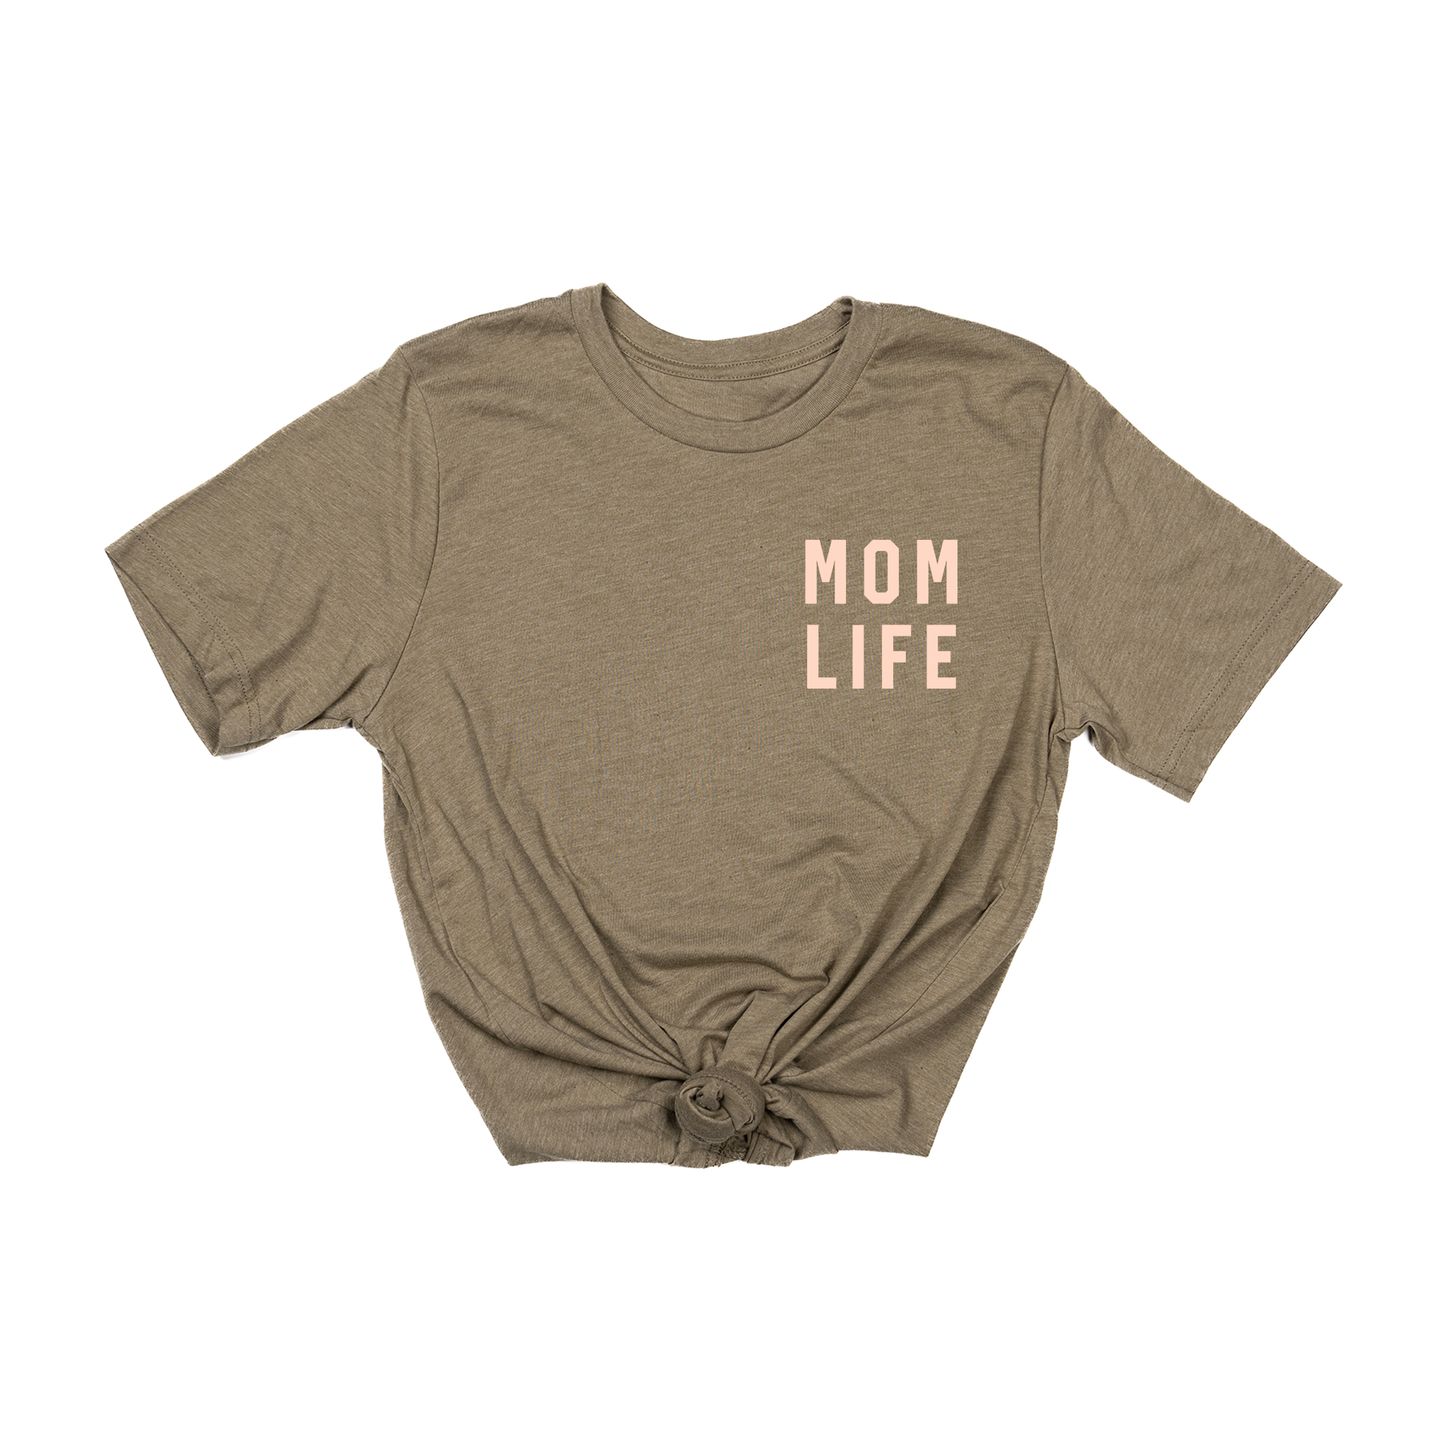 Mom Life (Pocket, Peach) - Tee (Olive)